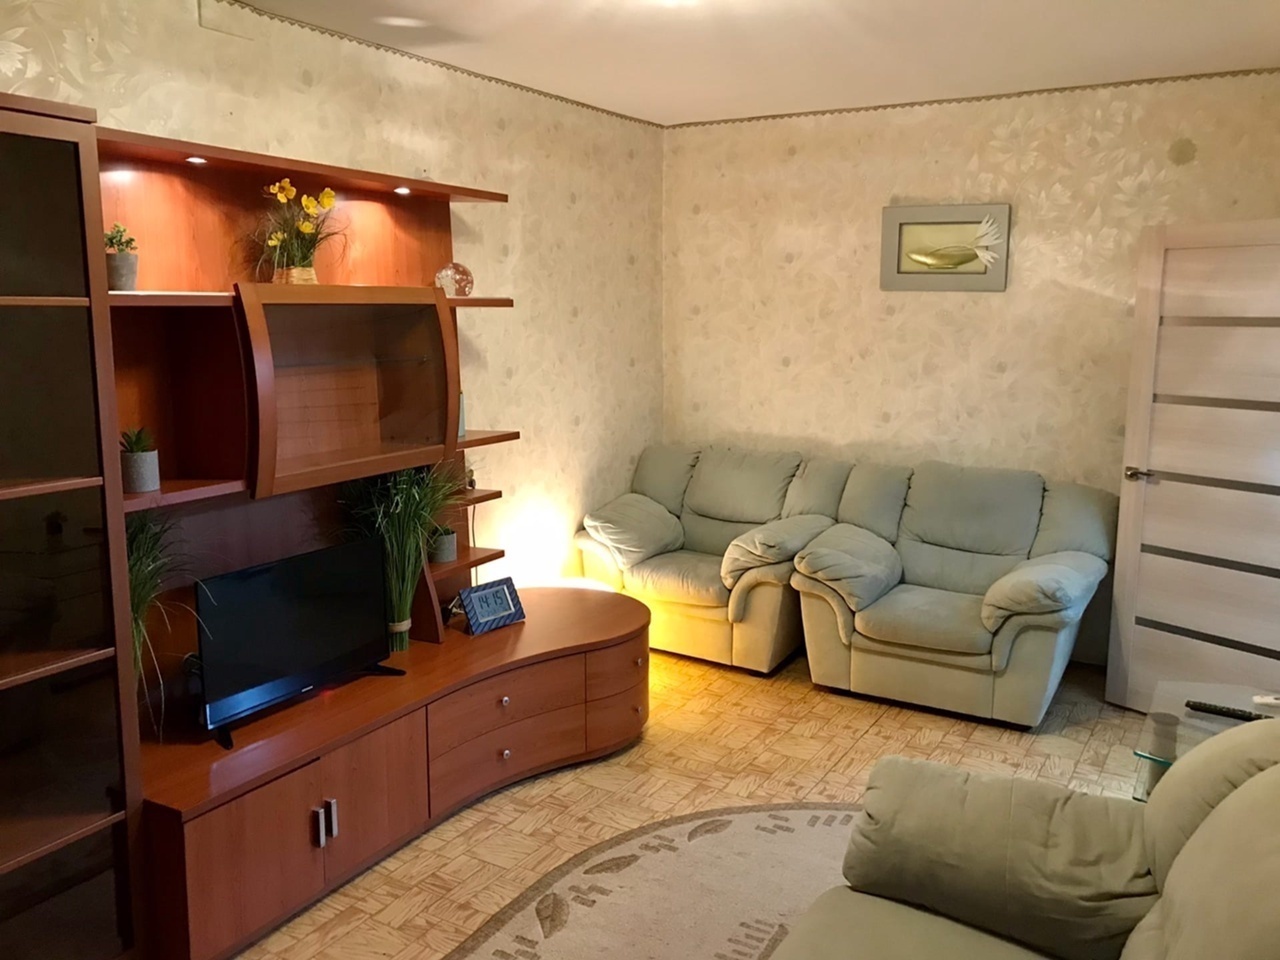 Снять квартиру в невьянске на длительный срок без мебели